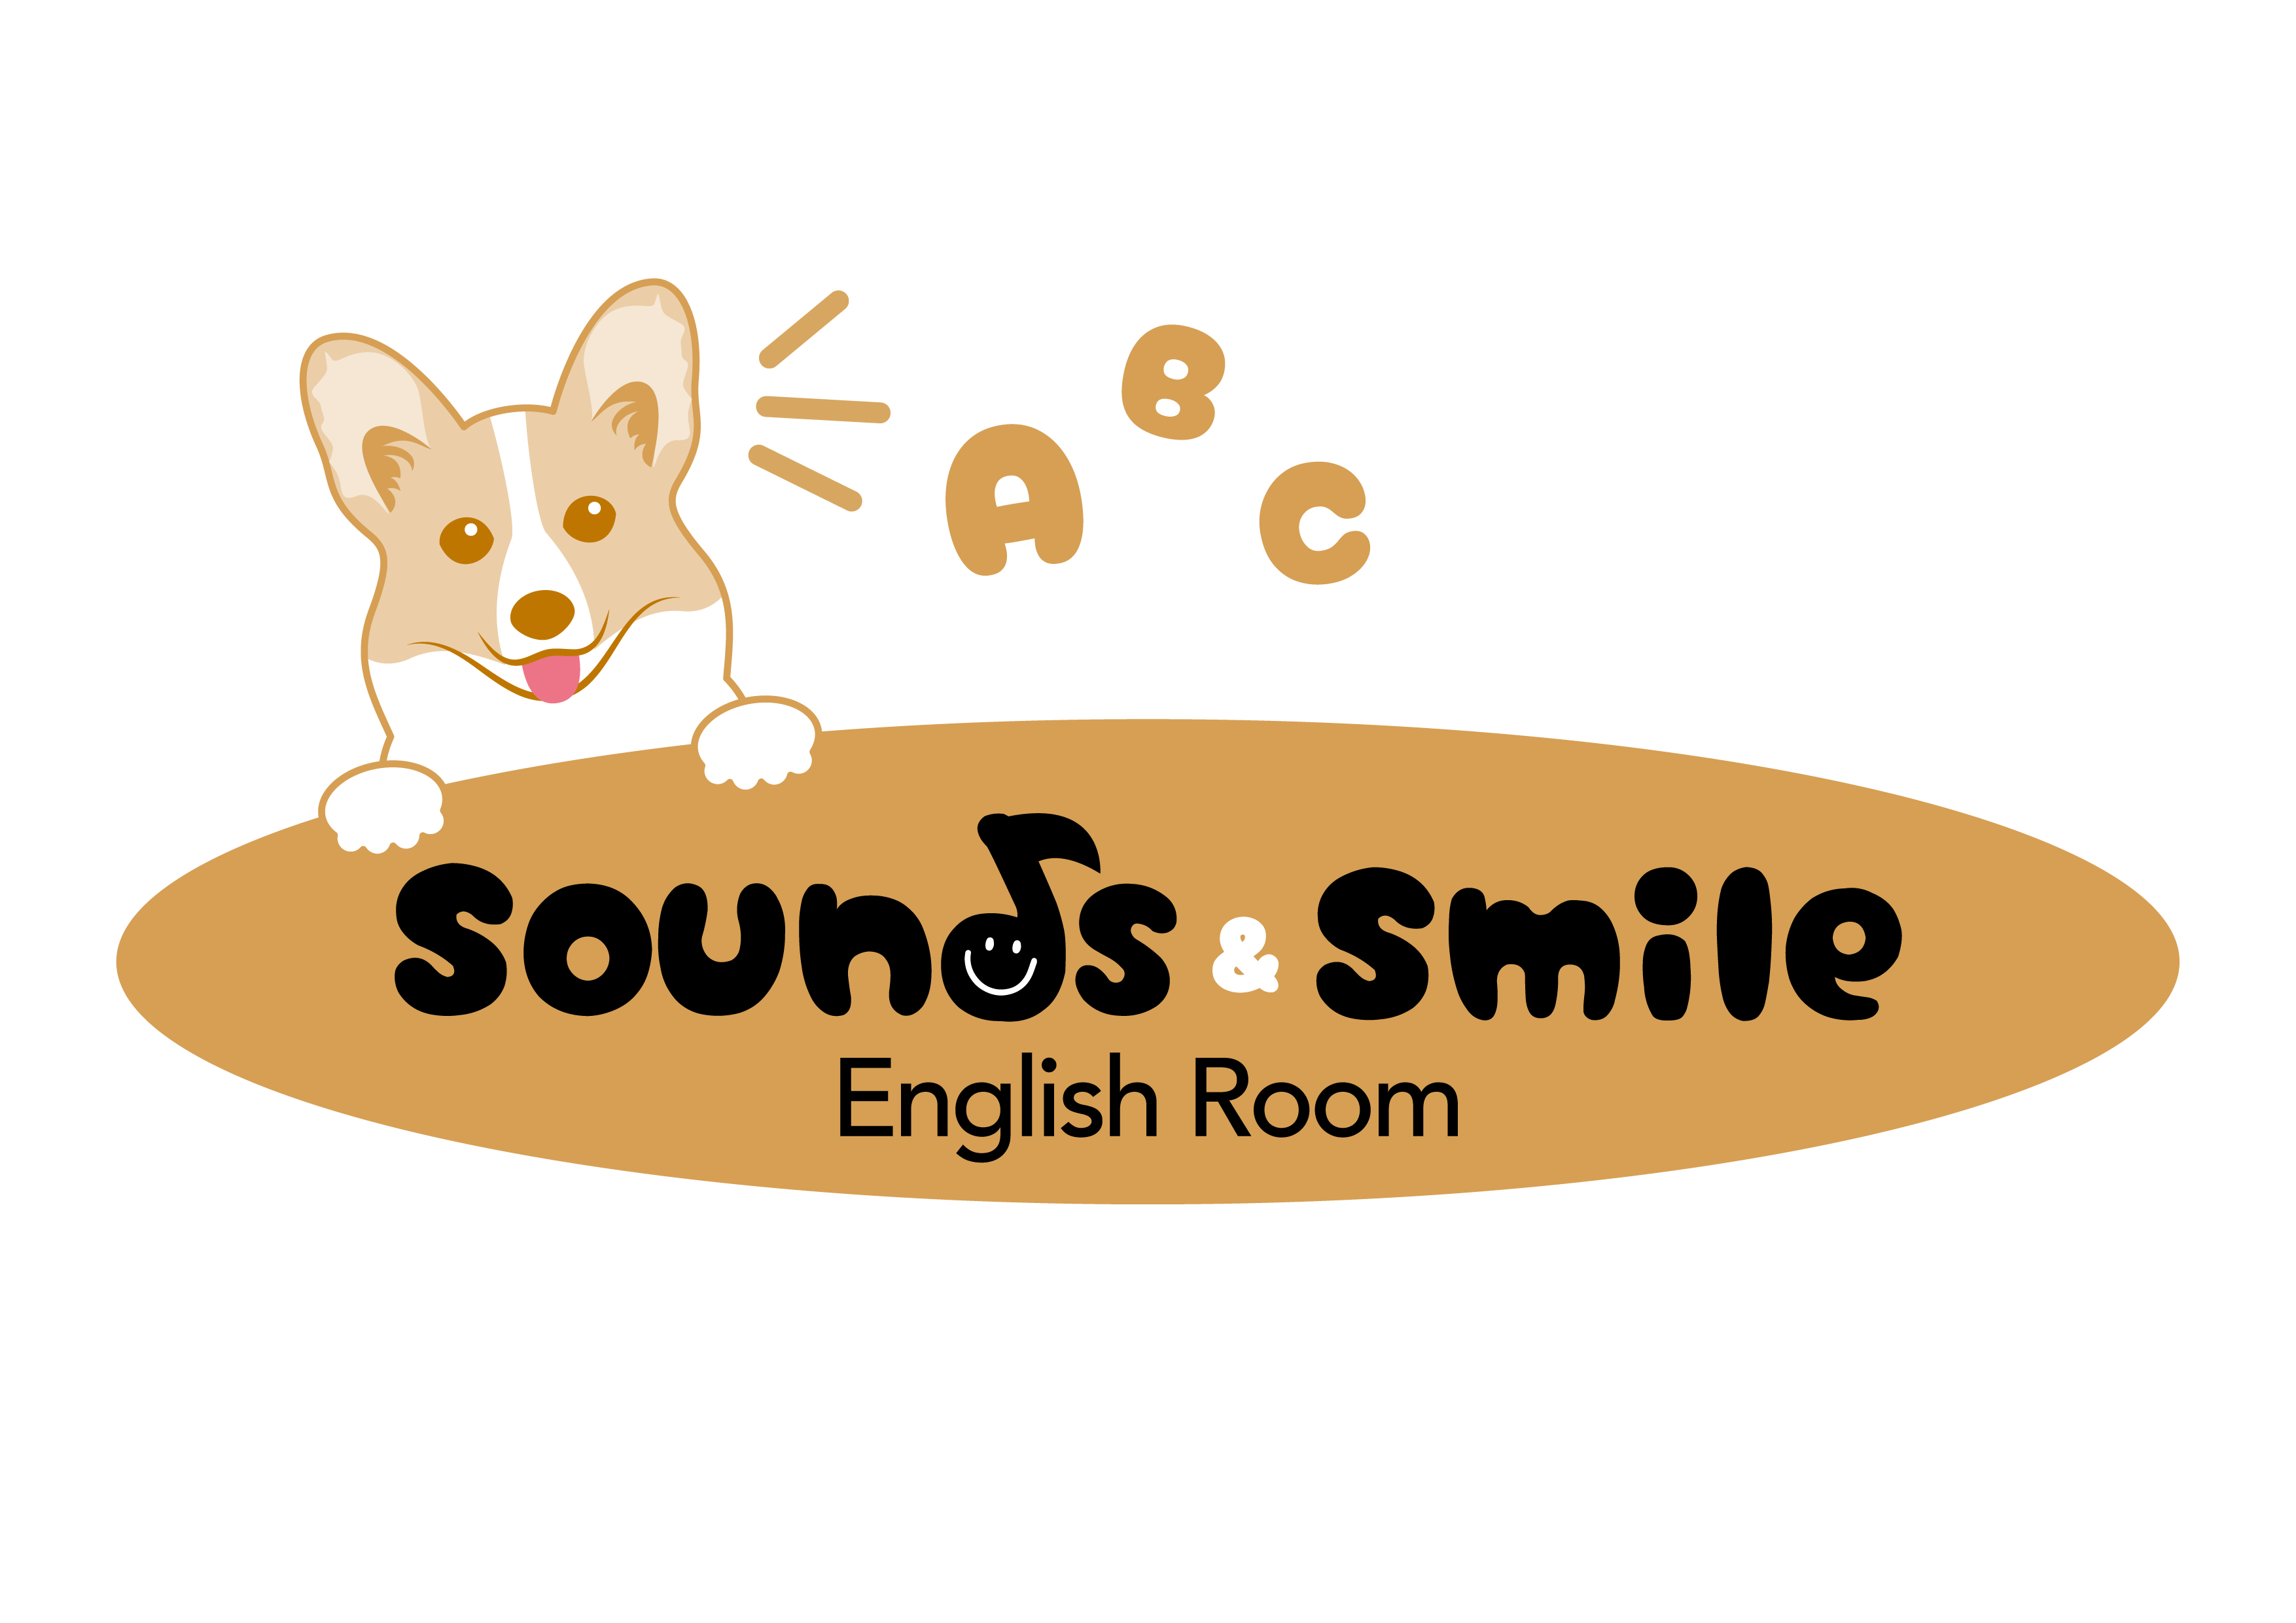 Sounds & Smile English Room